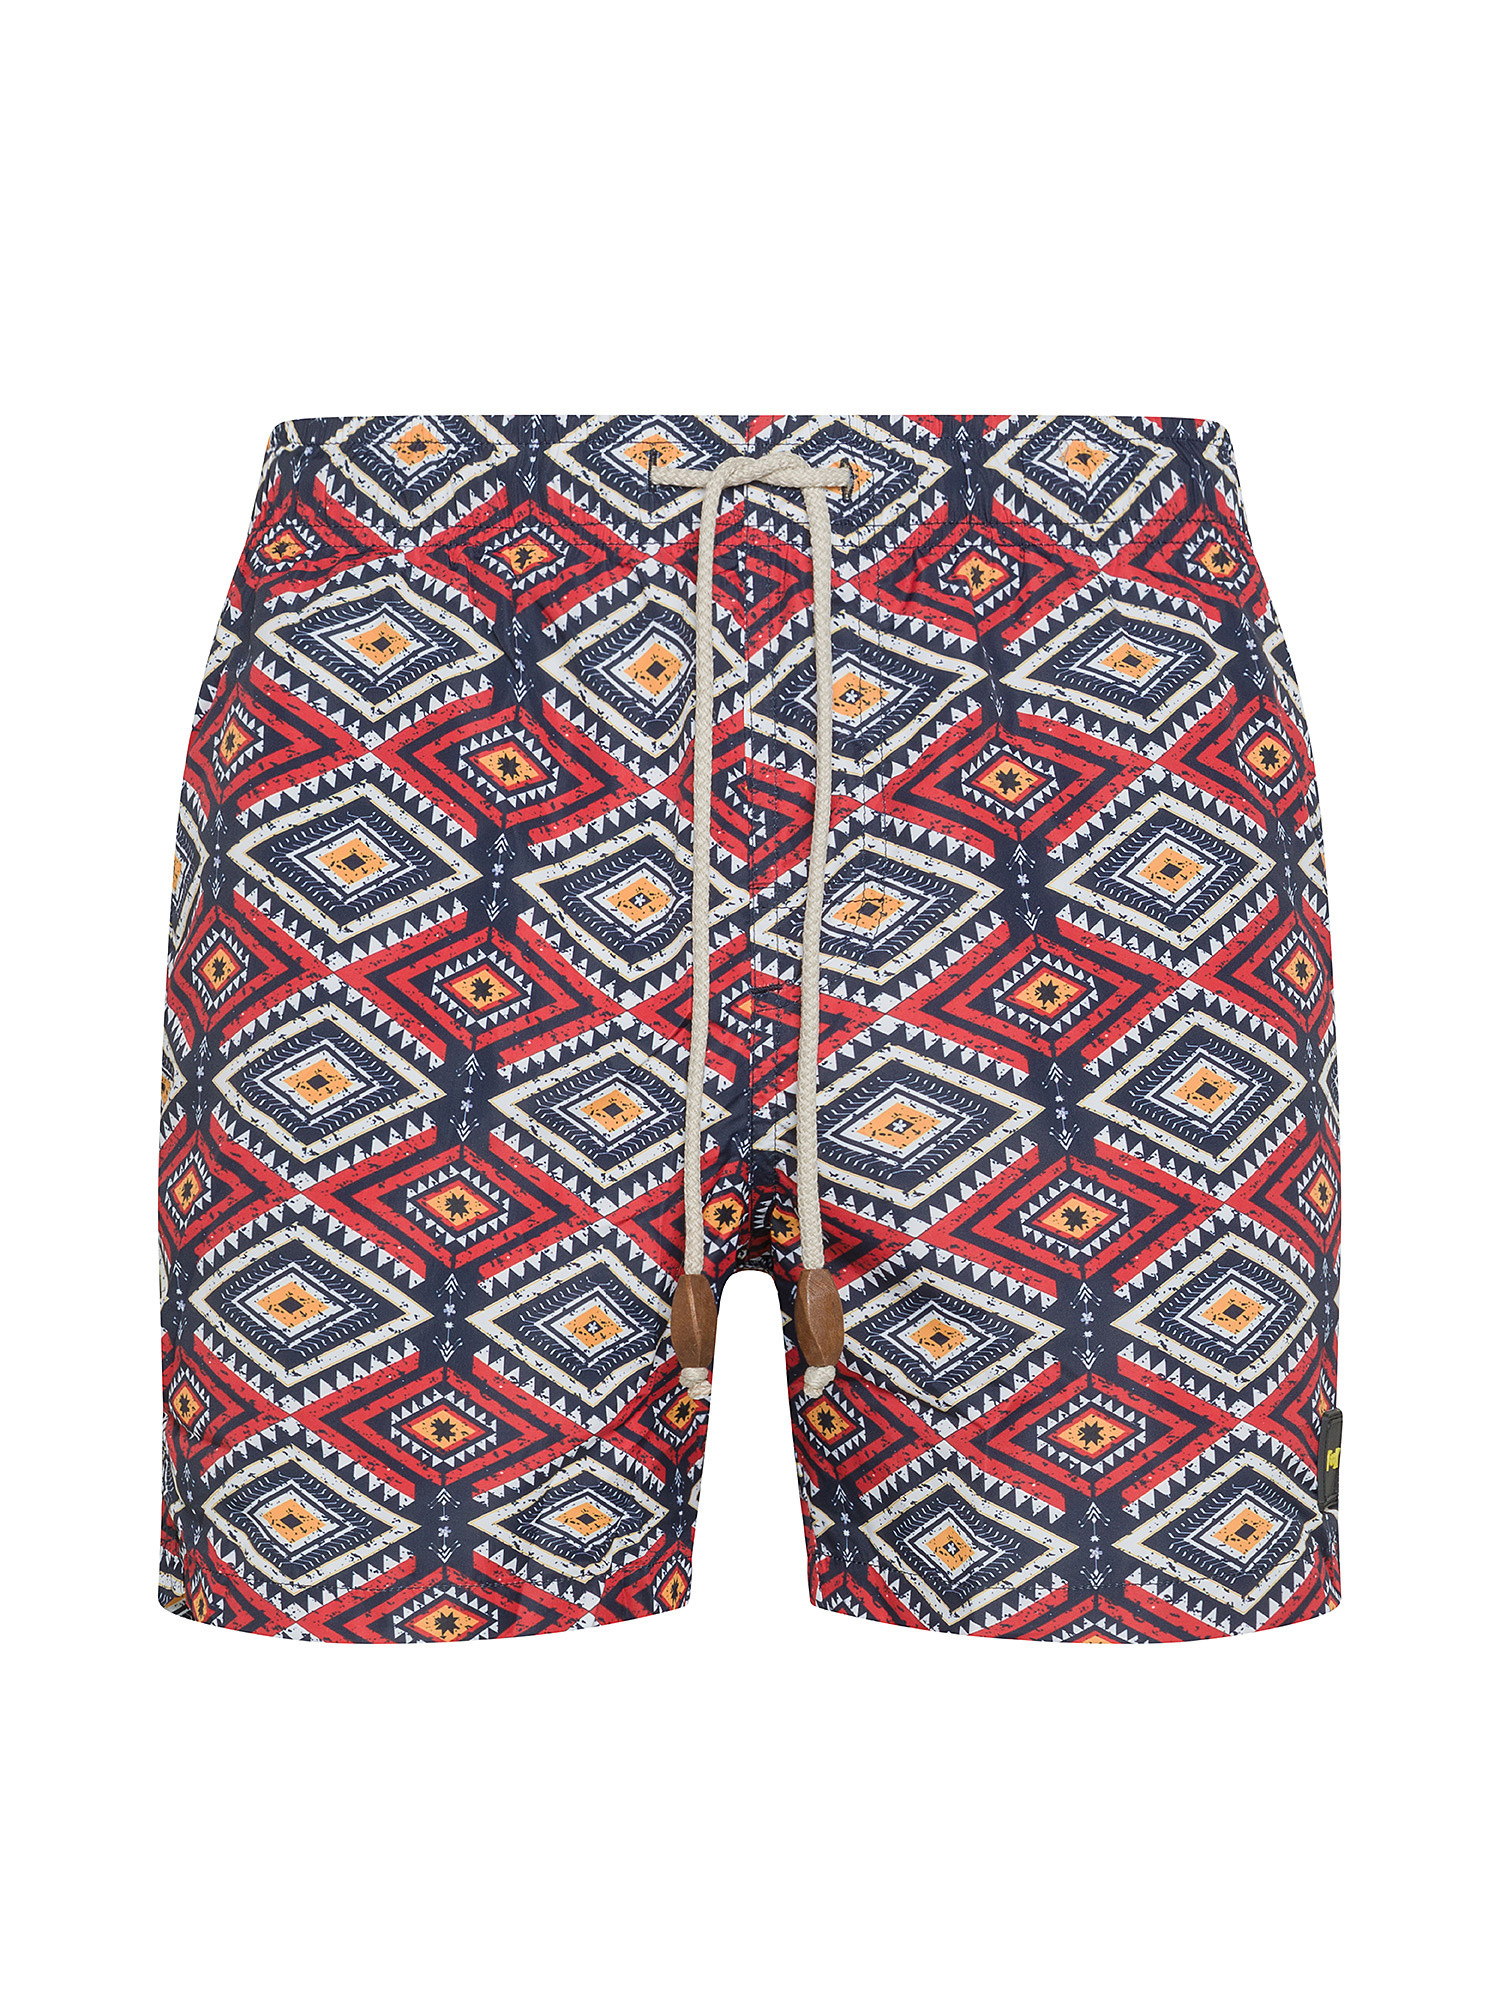 F**K - Patterned swim shorts, Multicolor, large image number 0